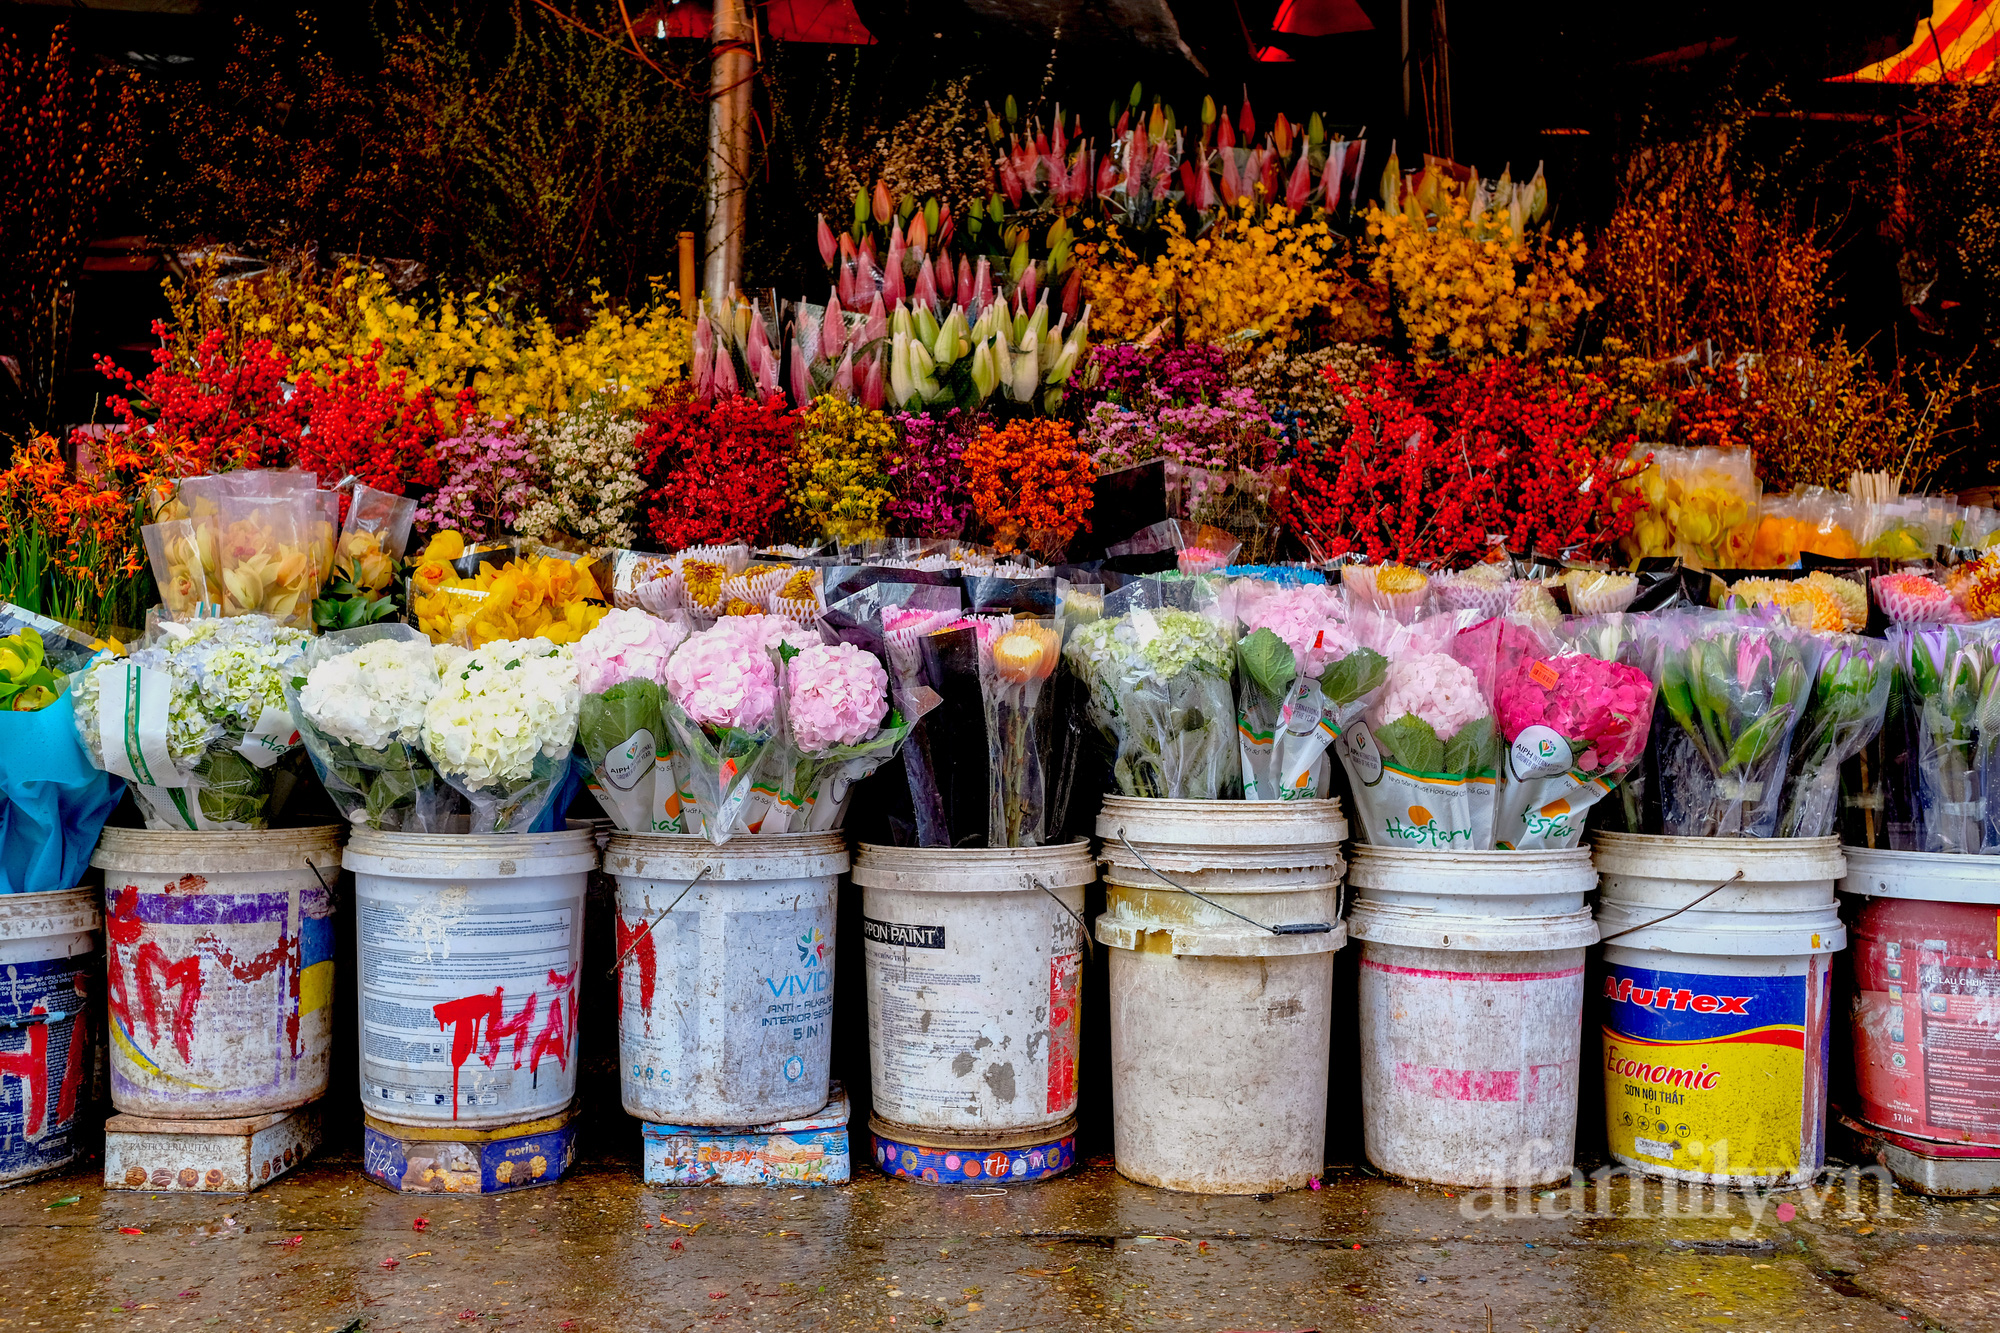 29 Tết đi chợ hoa Quảng Bá: Giá hoa tăng 20% so với ngày thường, mua nhanh 5 cành đào đông cắm đẹp nhà mà hết 2,2 triệu - Ảnh 4.